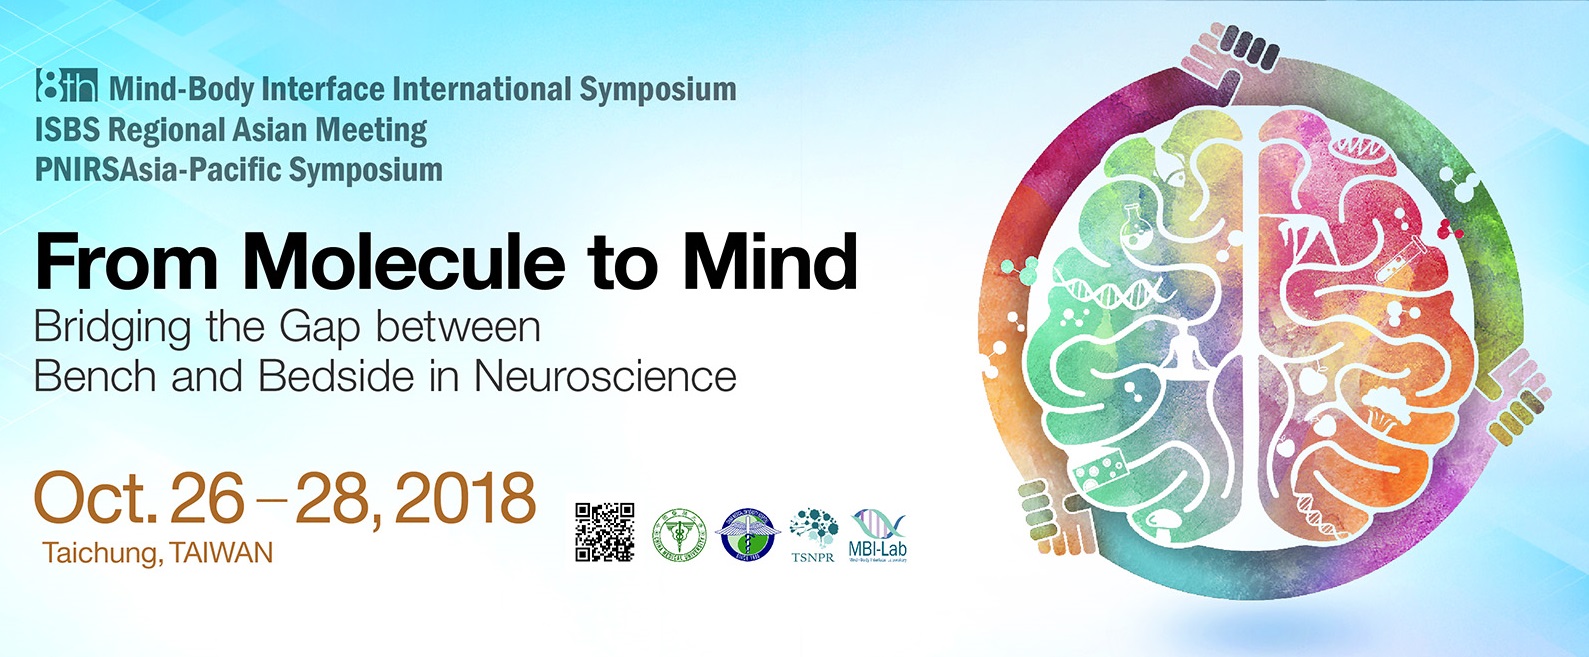 研討會：第八屆身心介面國際研討會 (8th Mind-Body Interface International Symposium